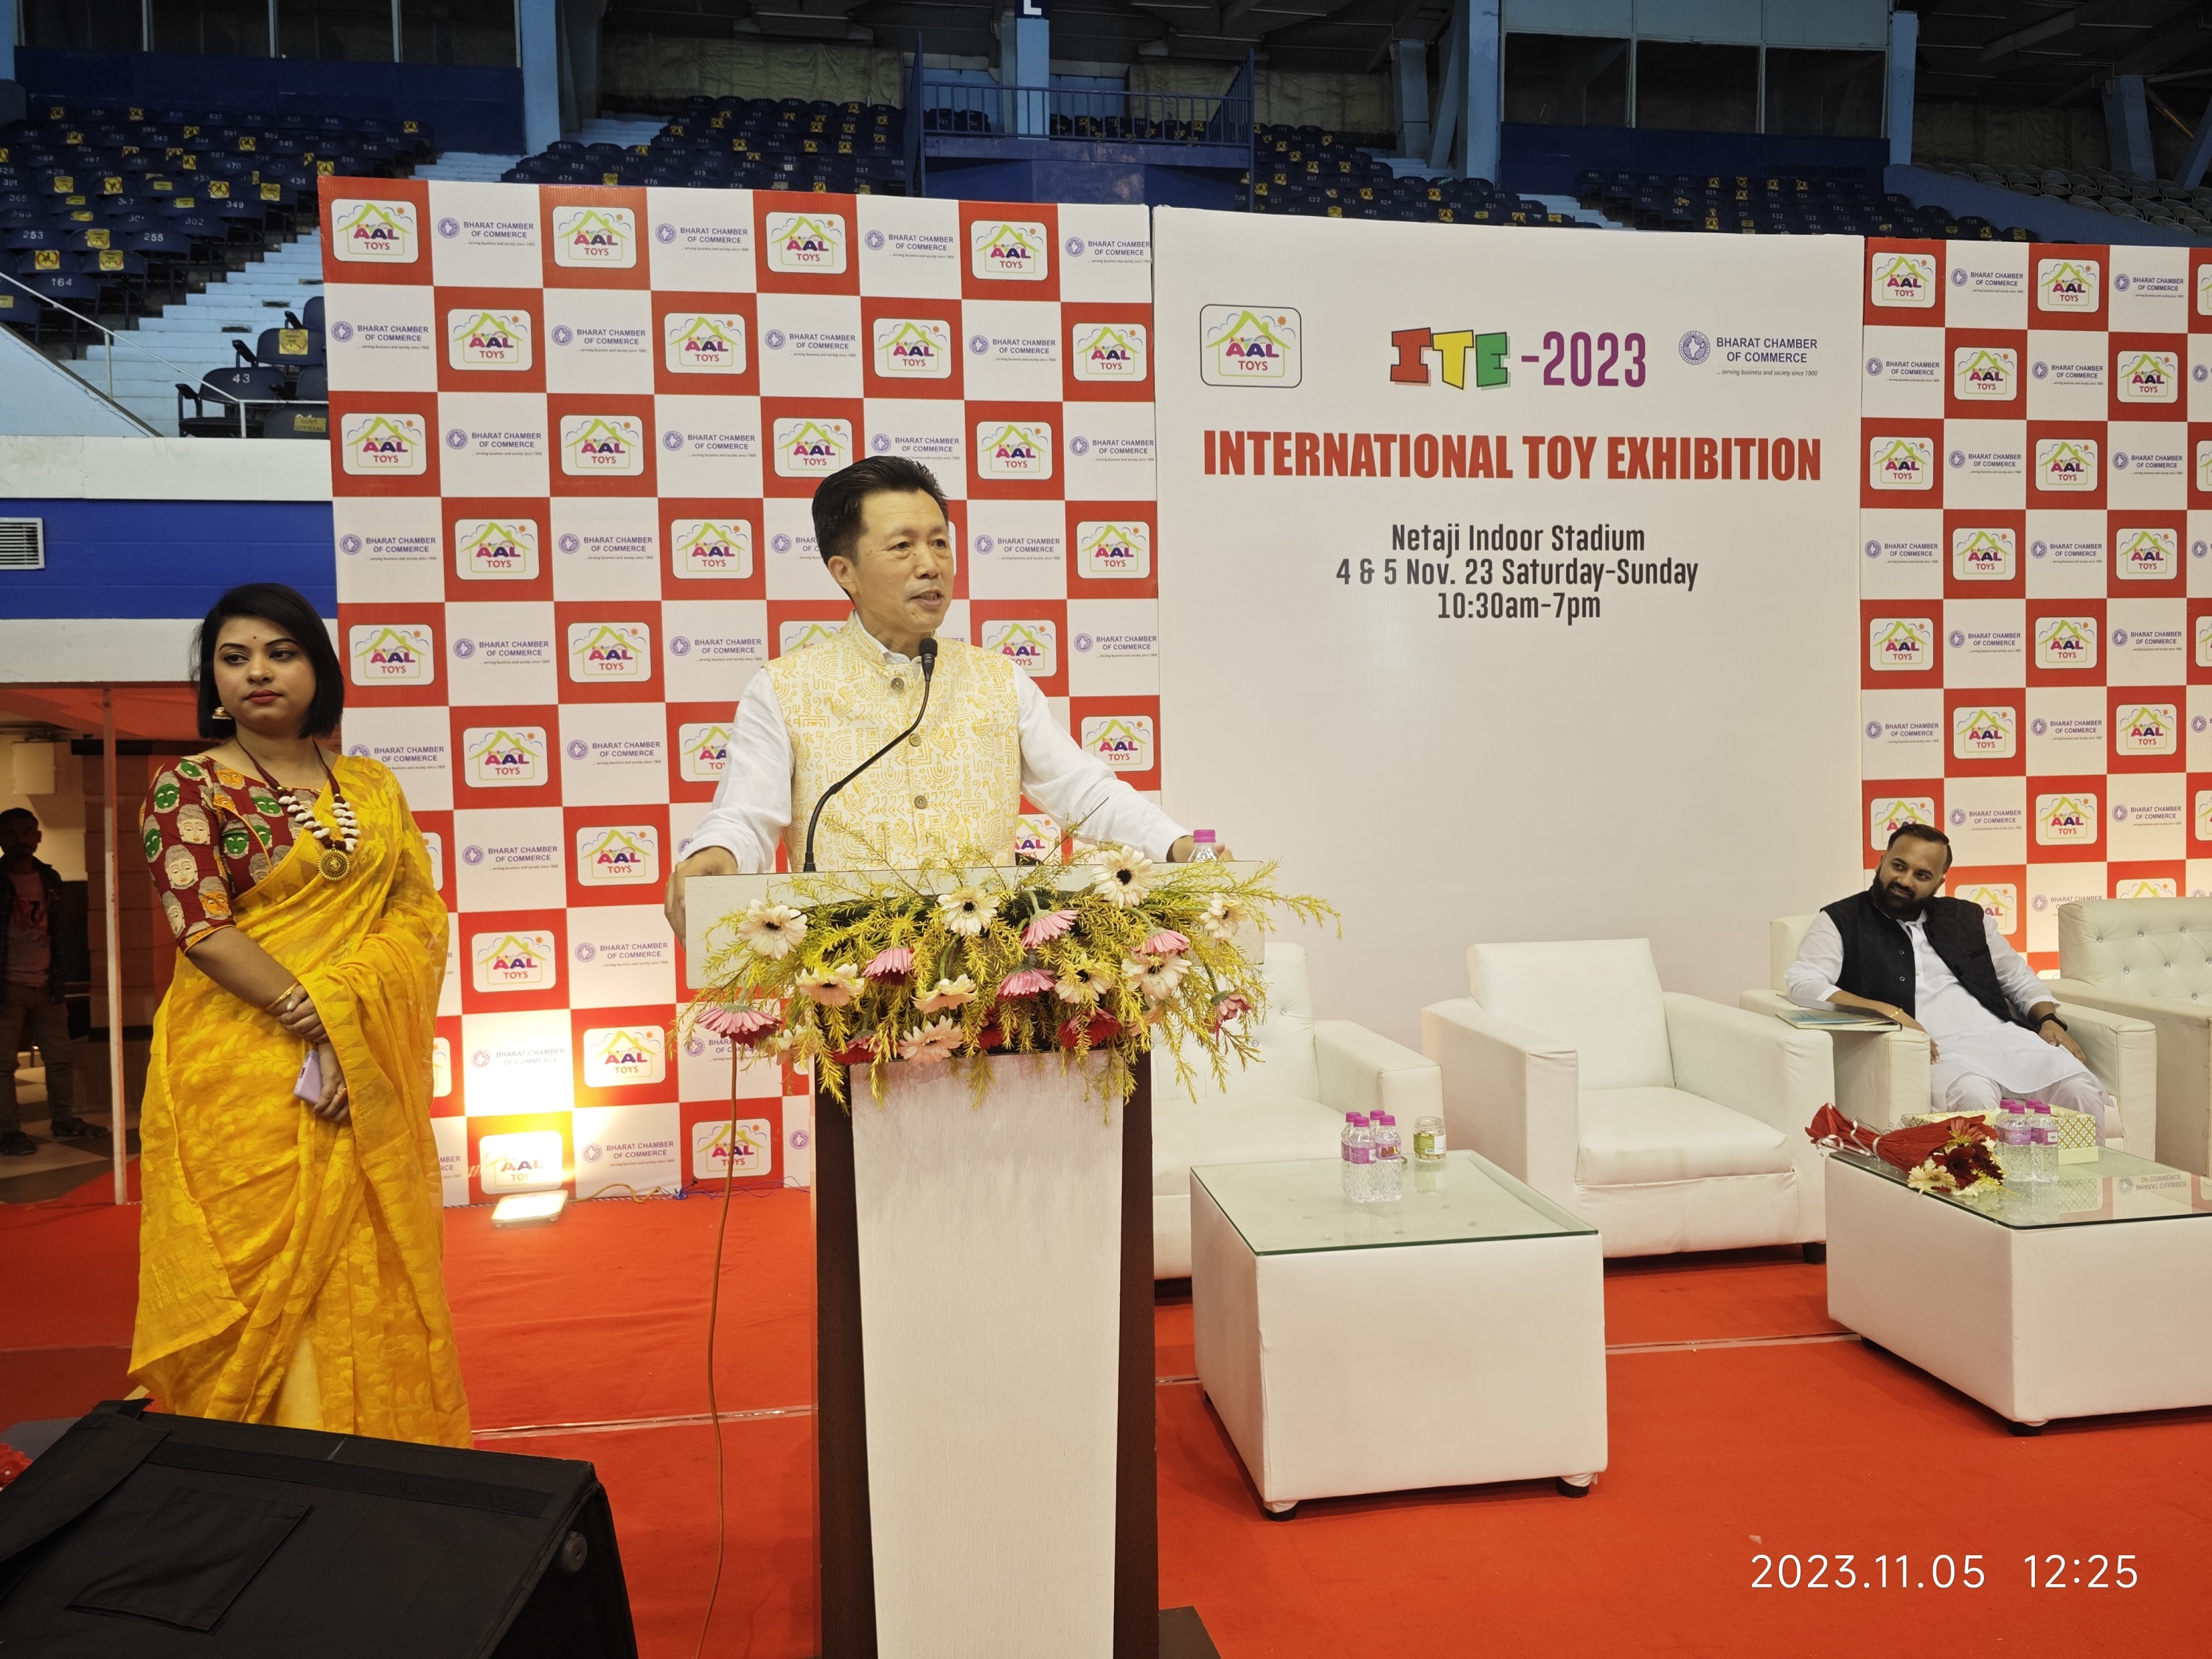 查立友总领事出席在加尔各答举办的2023国际玩具展